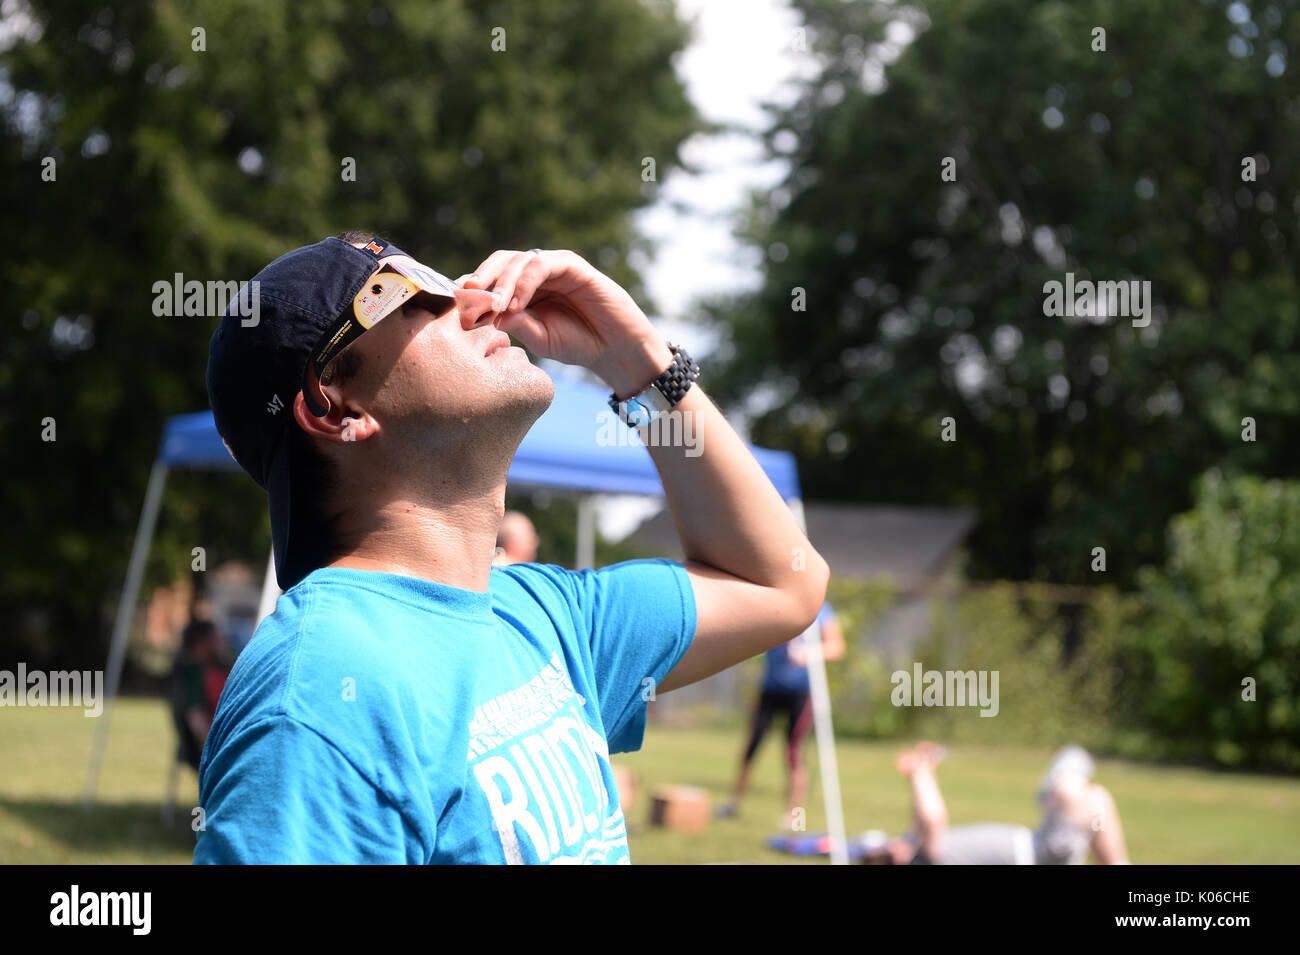 Marion, Illinois, USA. Août 21, 2017. Un homme se penche sur le soleil à l'aide d'éclipse de soleil Lunettes de Marion, Illinois Crédit : Gino's Premium Images/Alamy Live News Banque D'Images